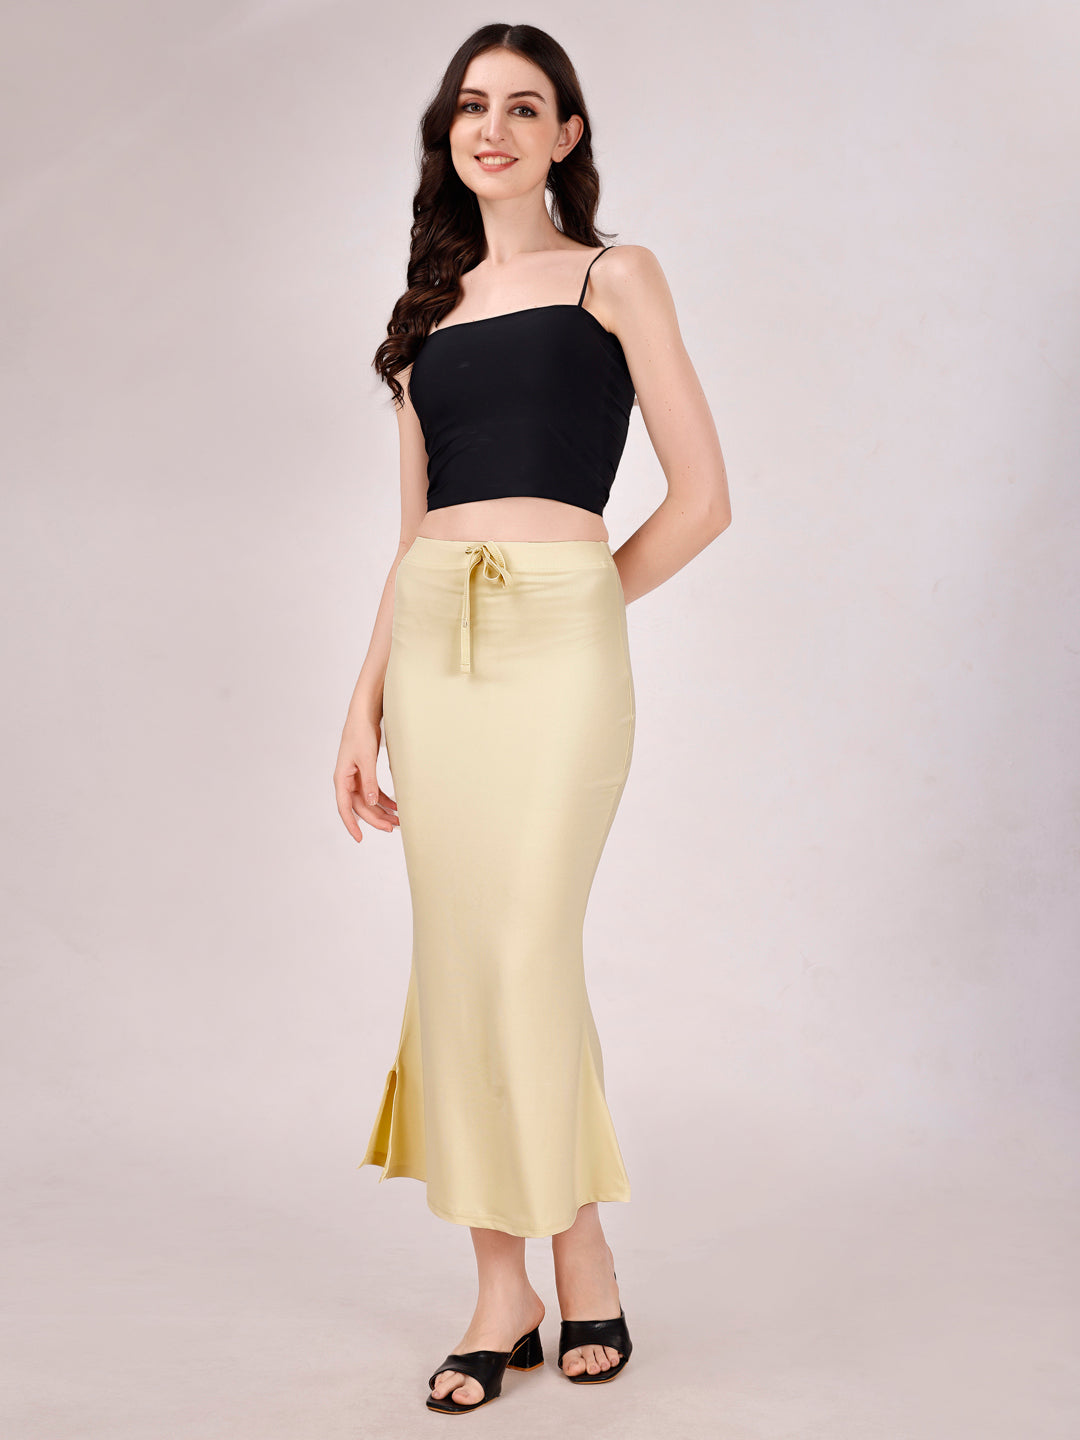 Yellow saree shape wear, Saree Petticoat